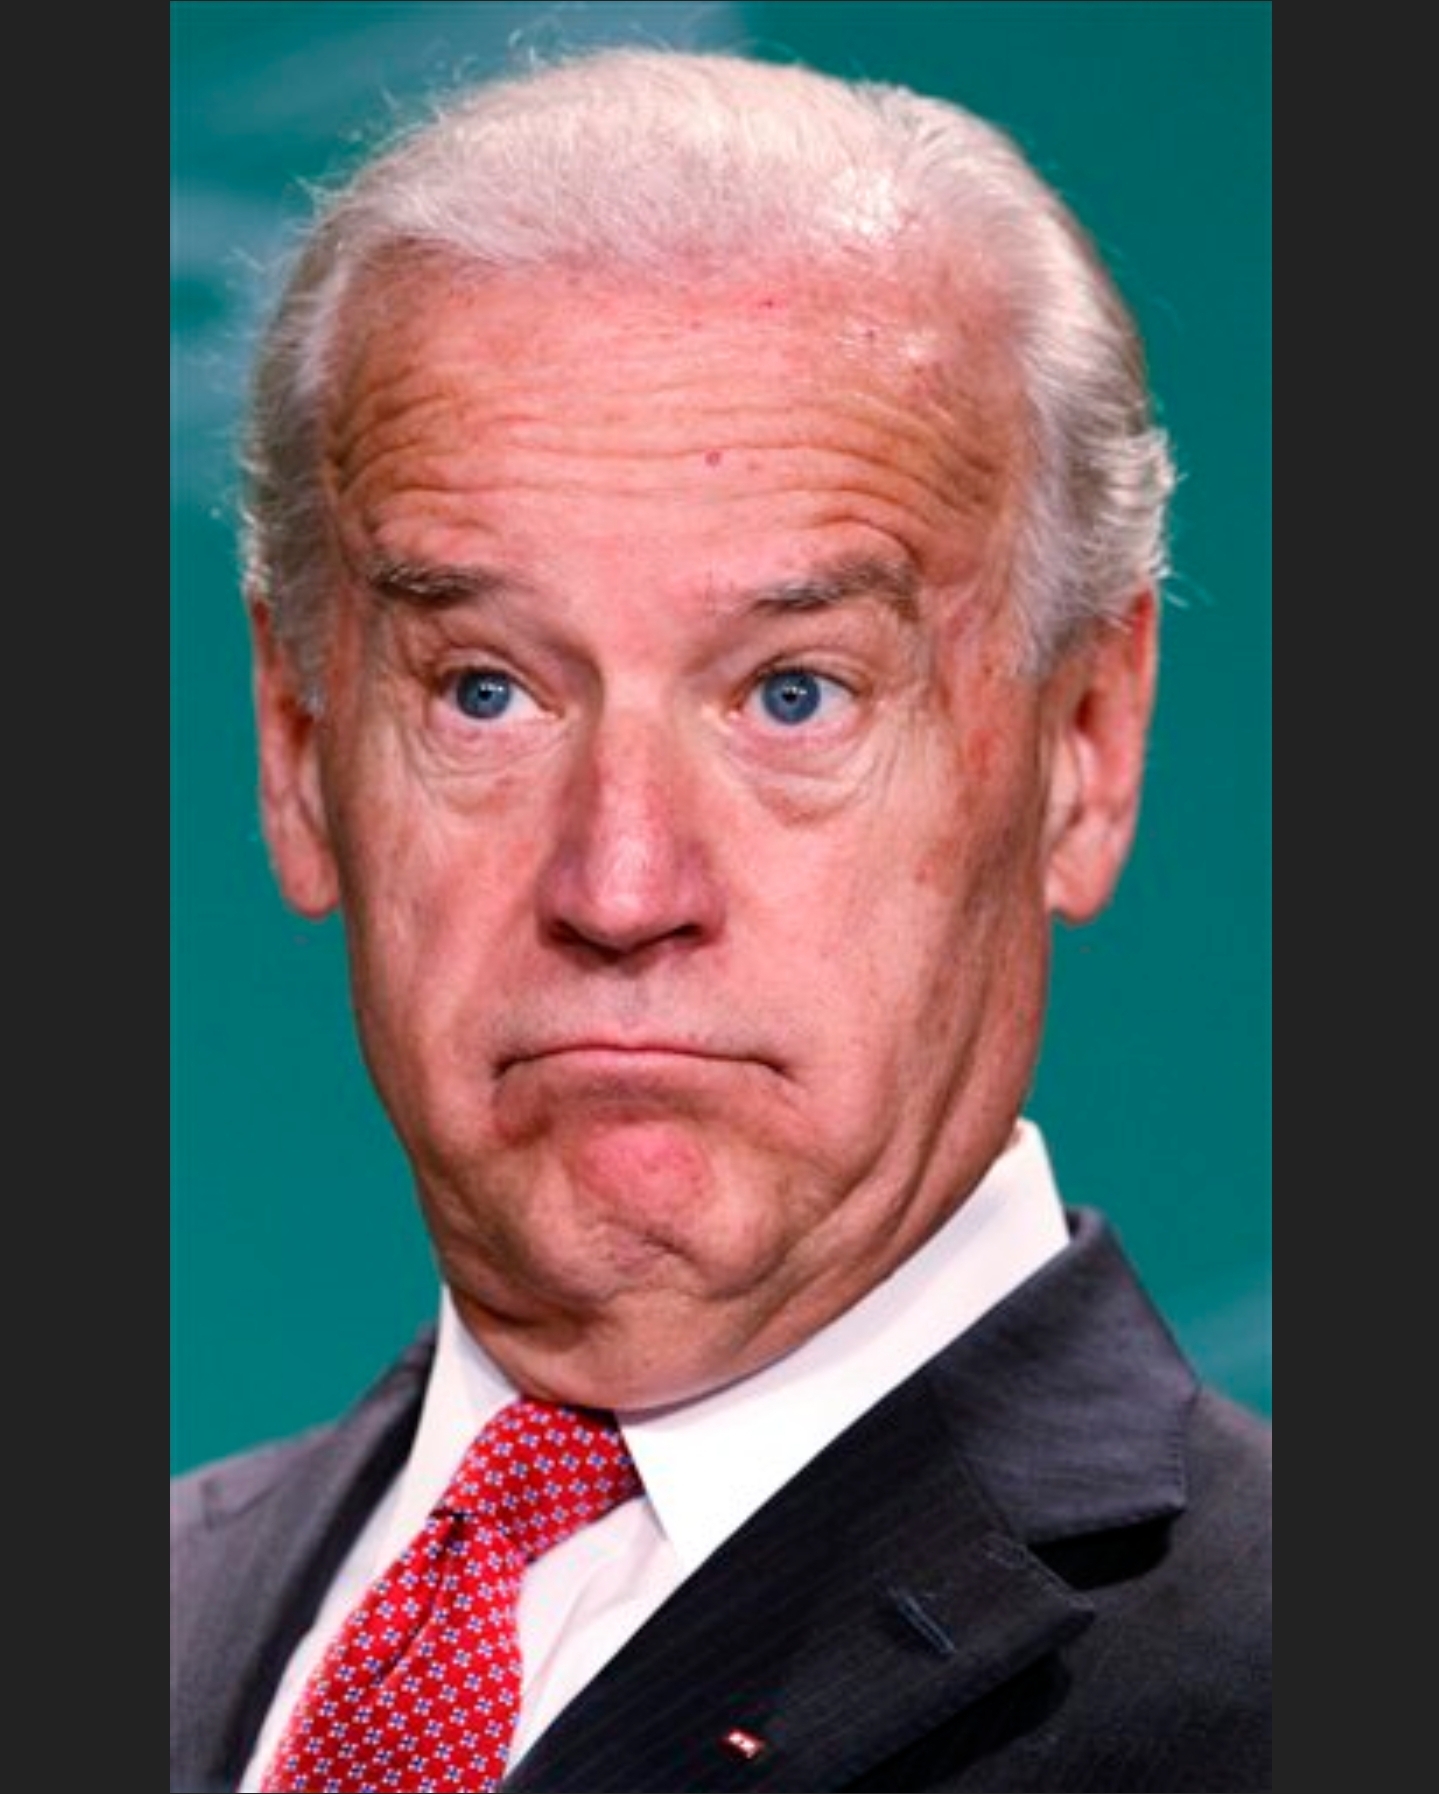 High Quality VP Joe Biden Blank Meme Template